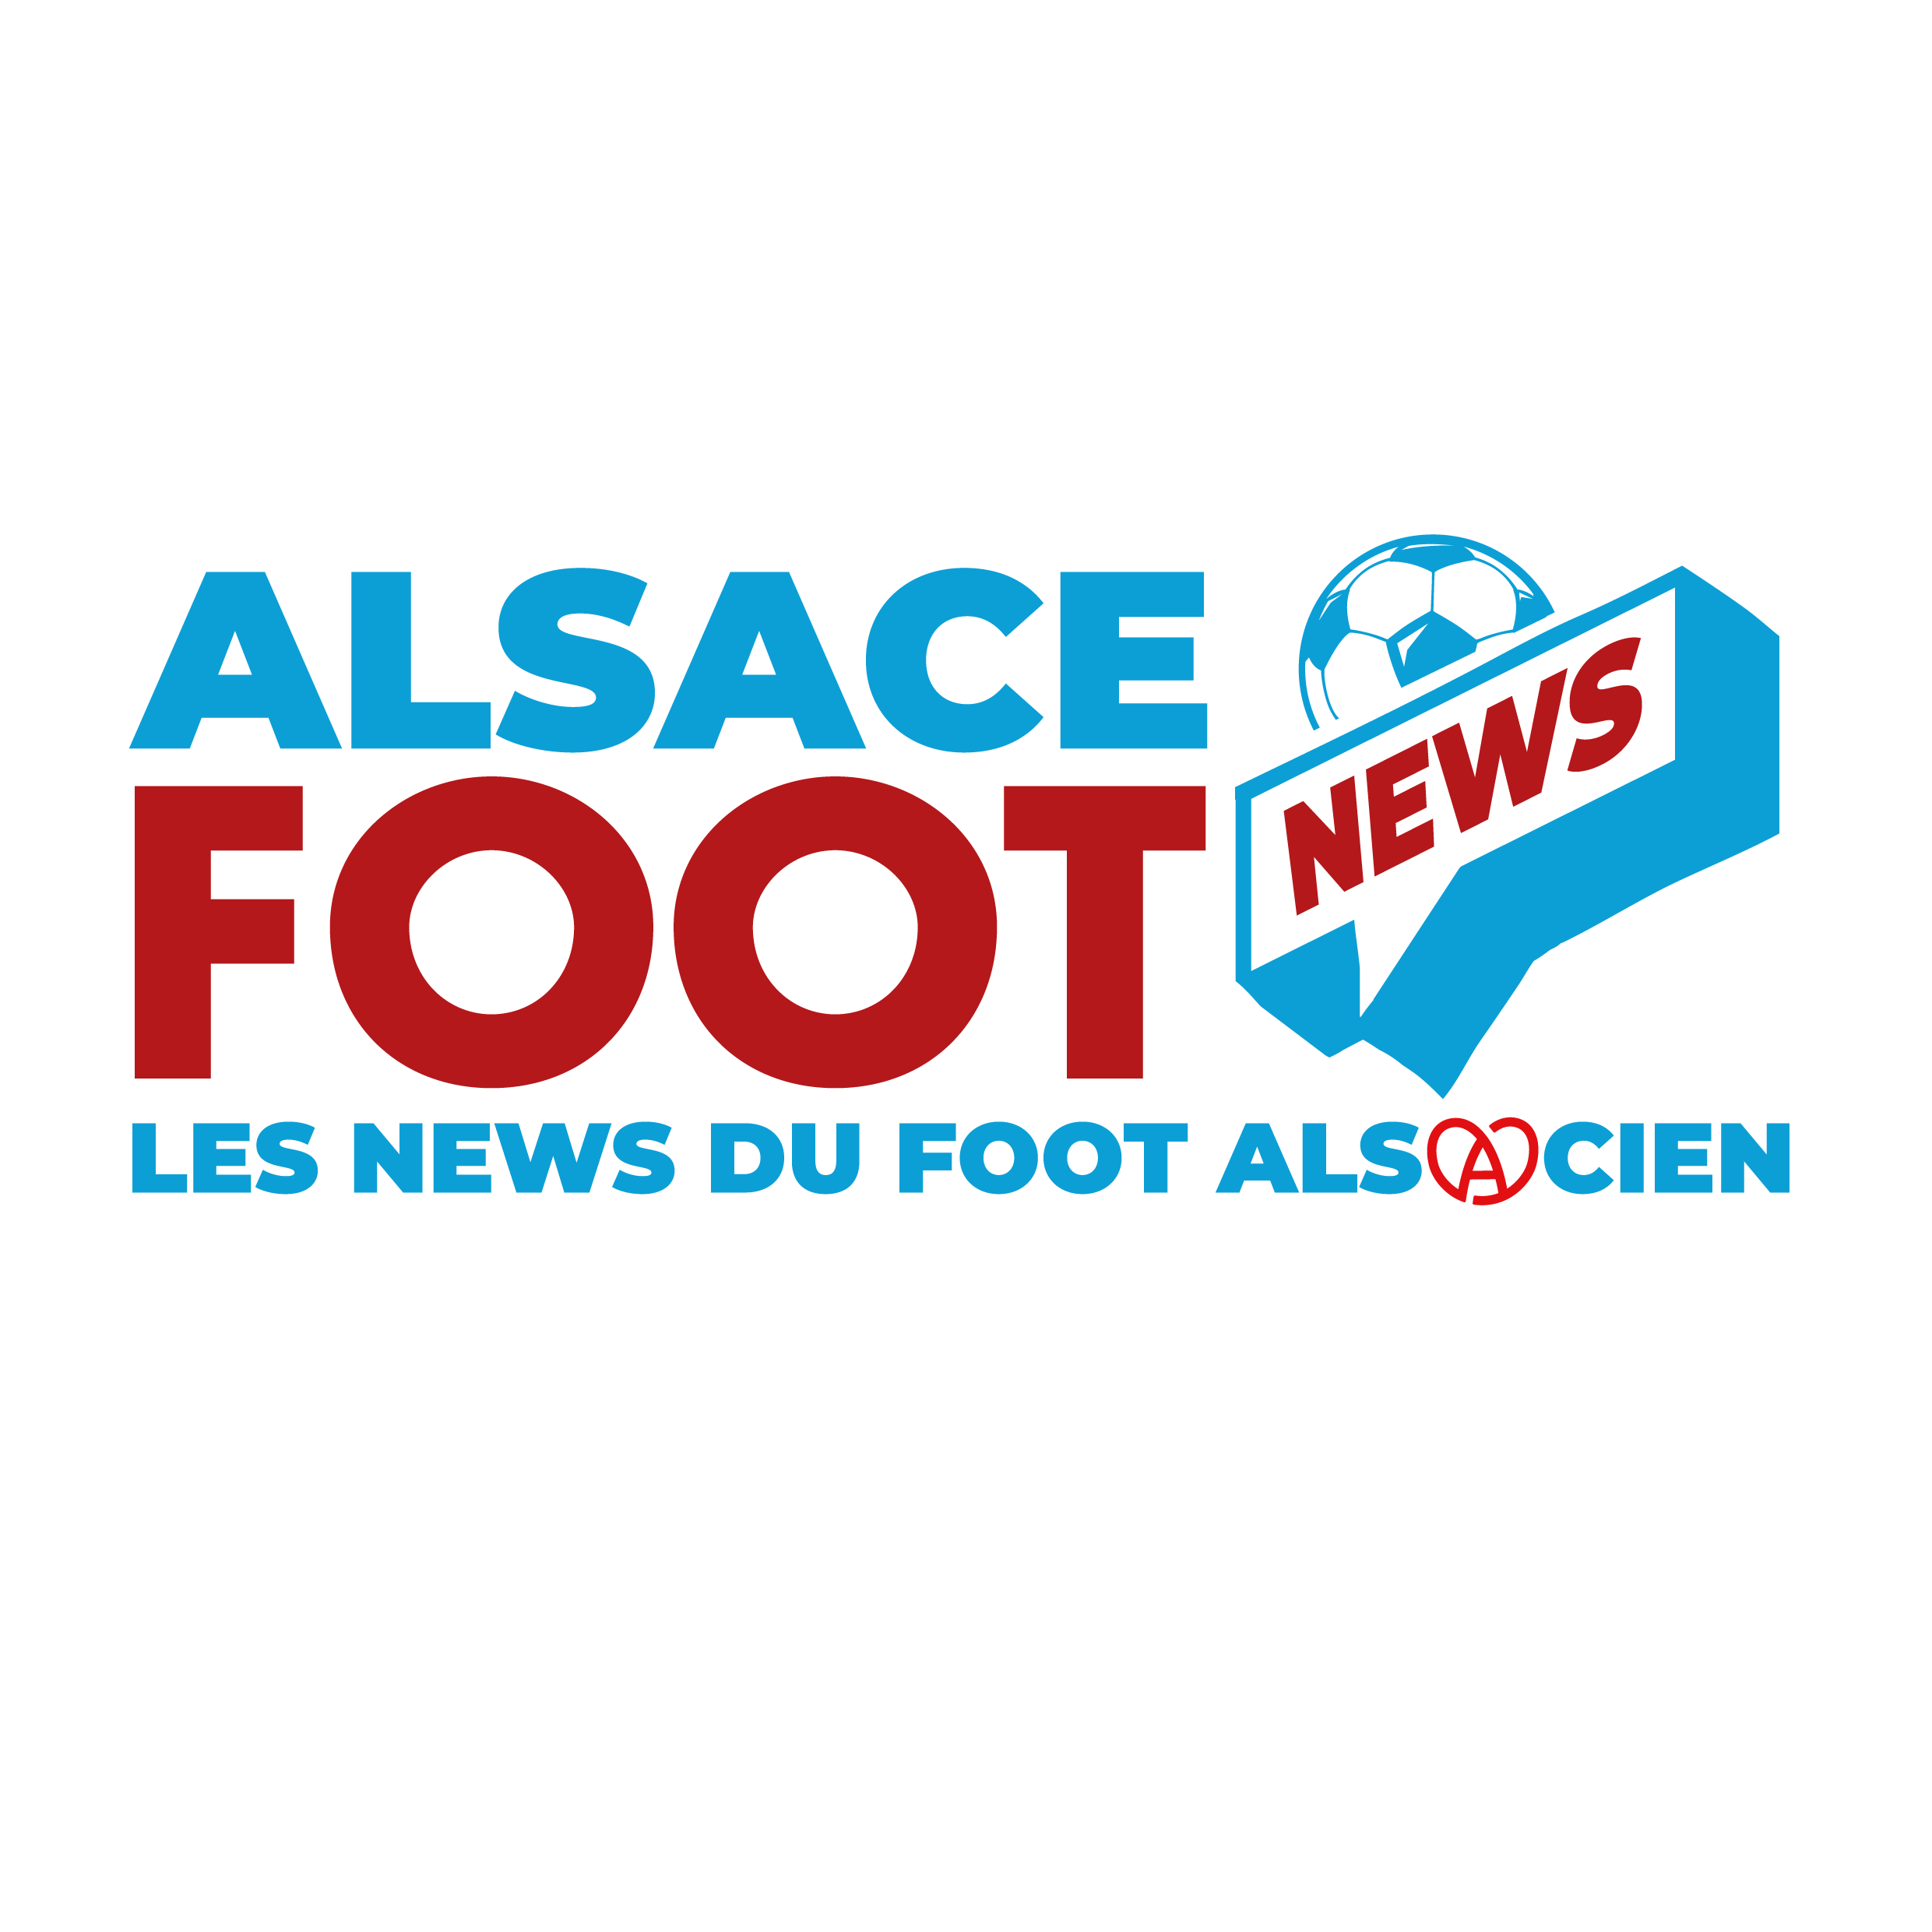 Alsace Foot News